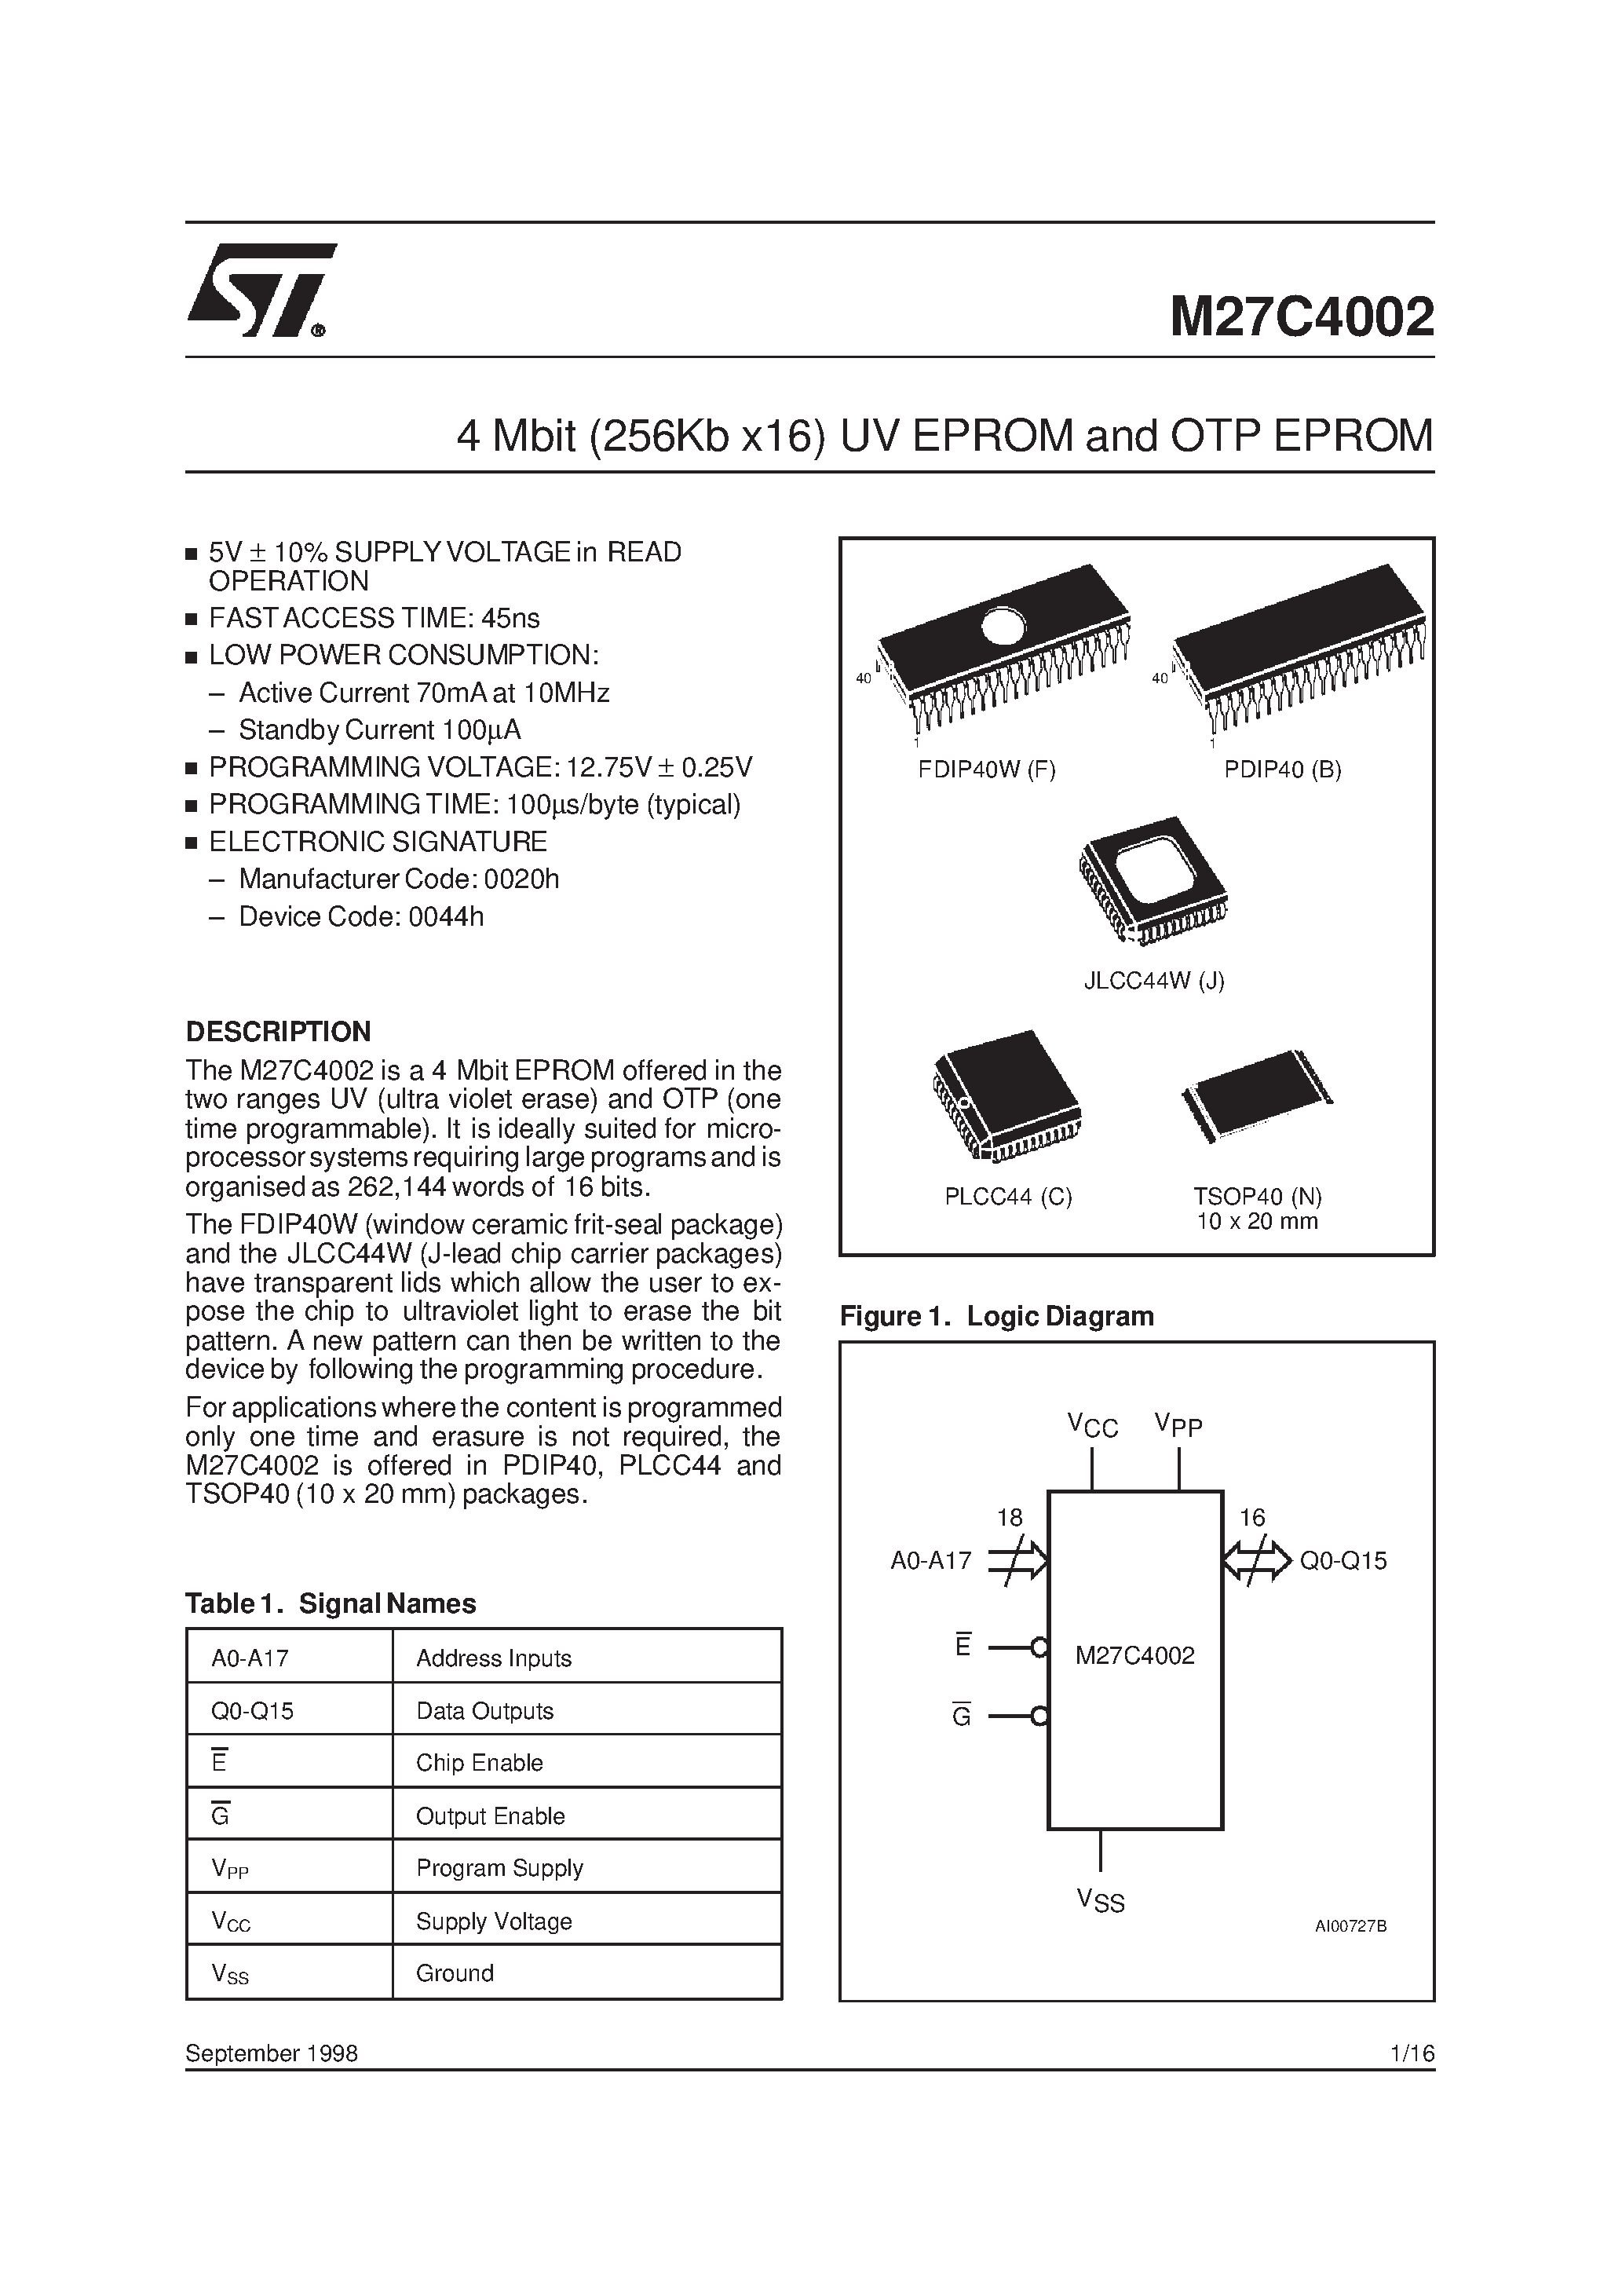 Datasheet M27C4002-12B6X - 4 Mbit 256Kb x16 UV EPROM and OTP EPROM page 1